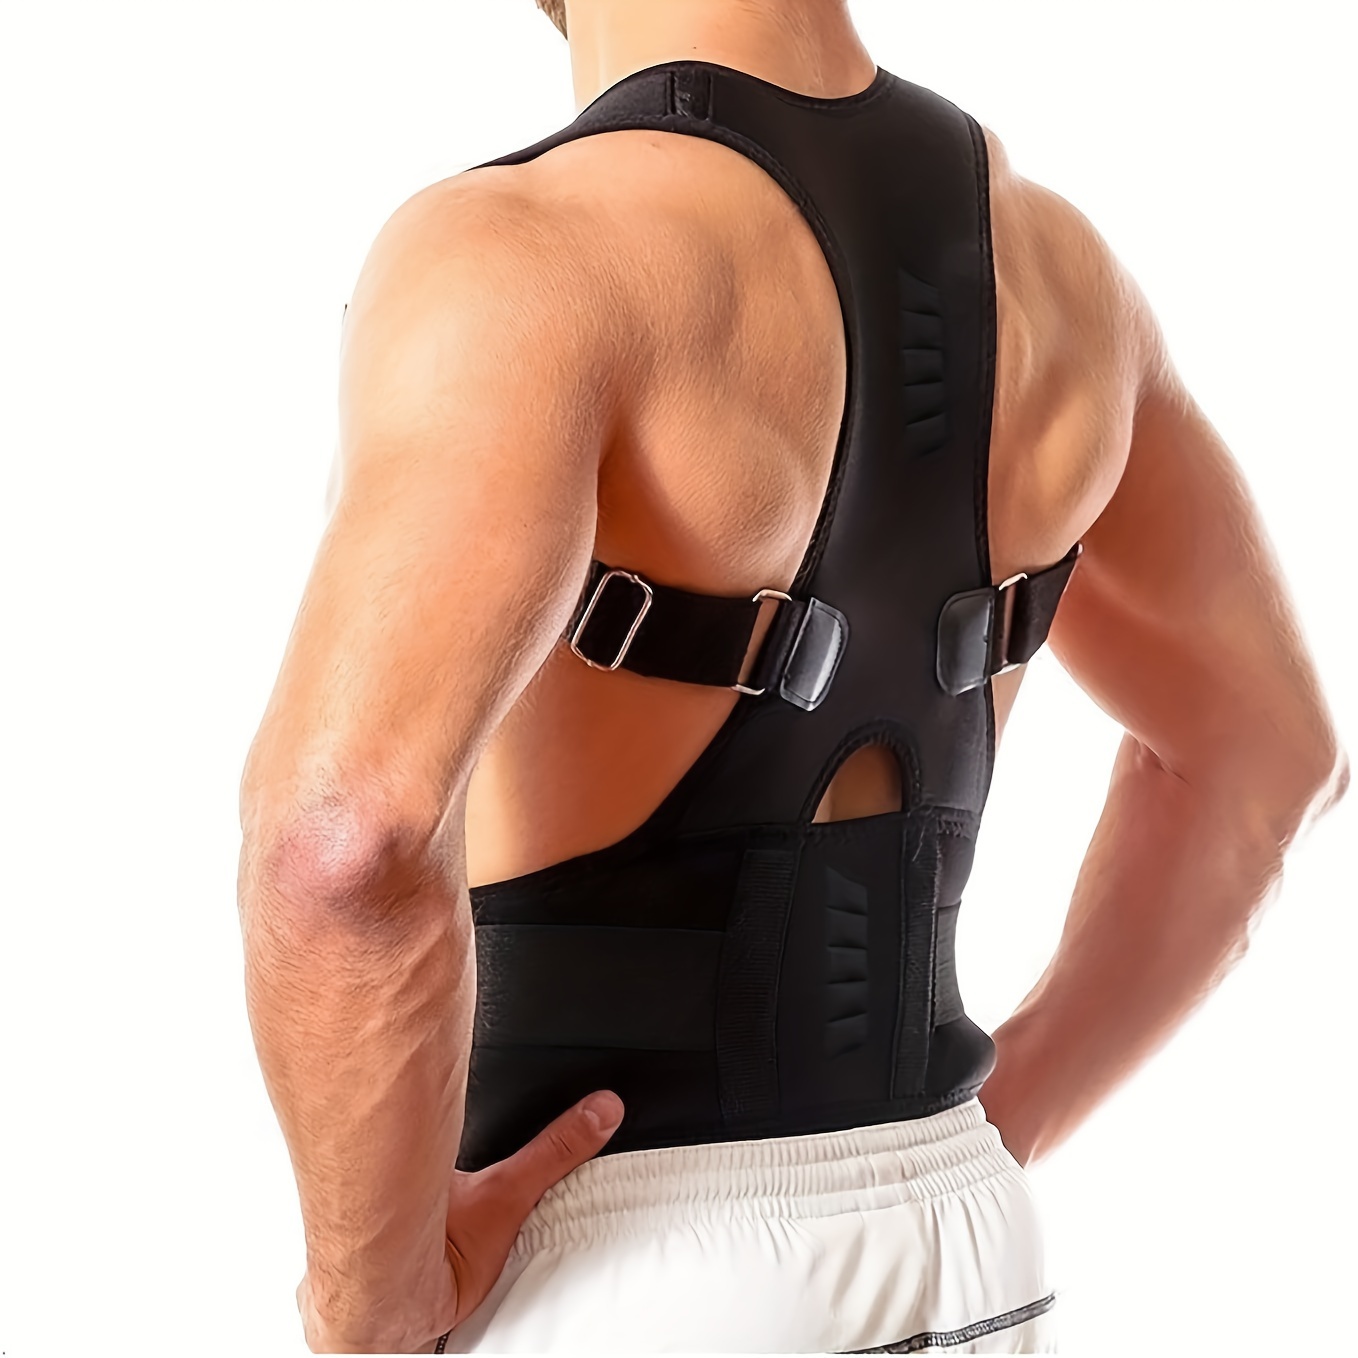 Portable Shoulder Back Opening Vest Posture Corrector Sports - Temu